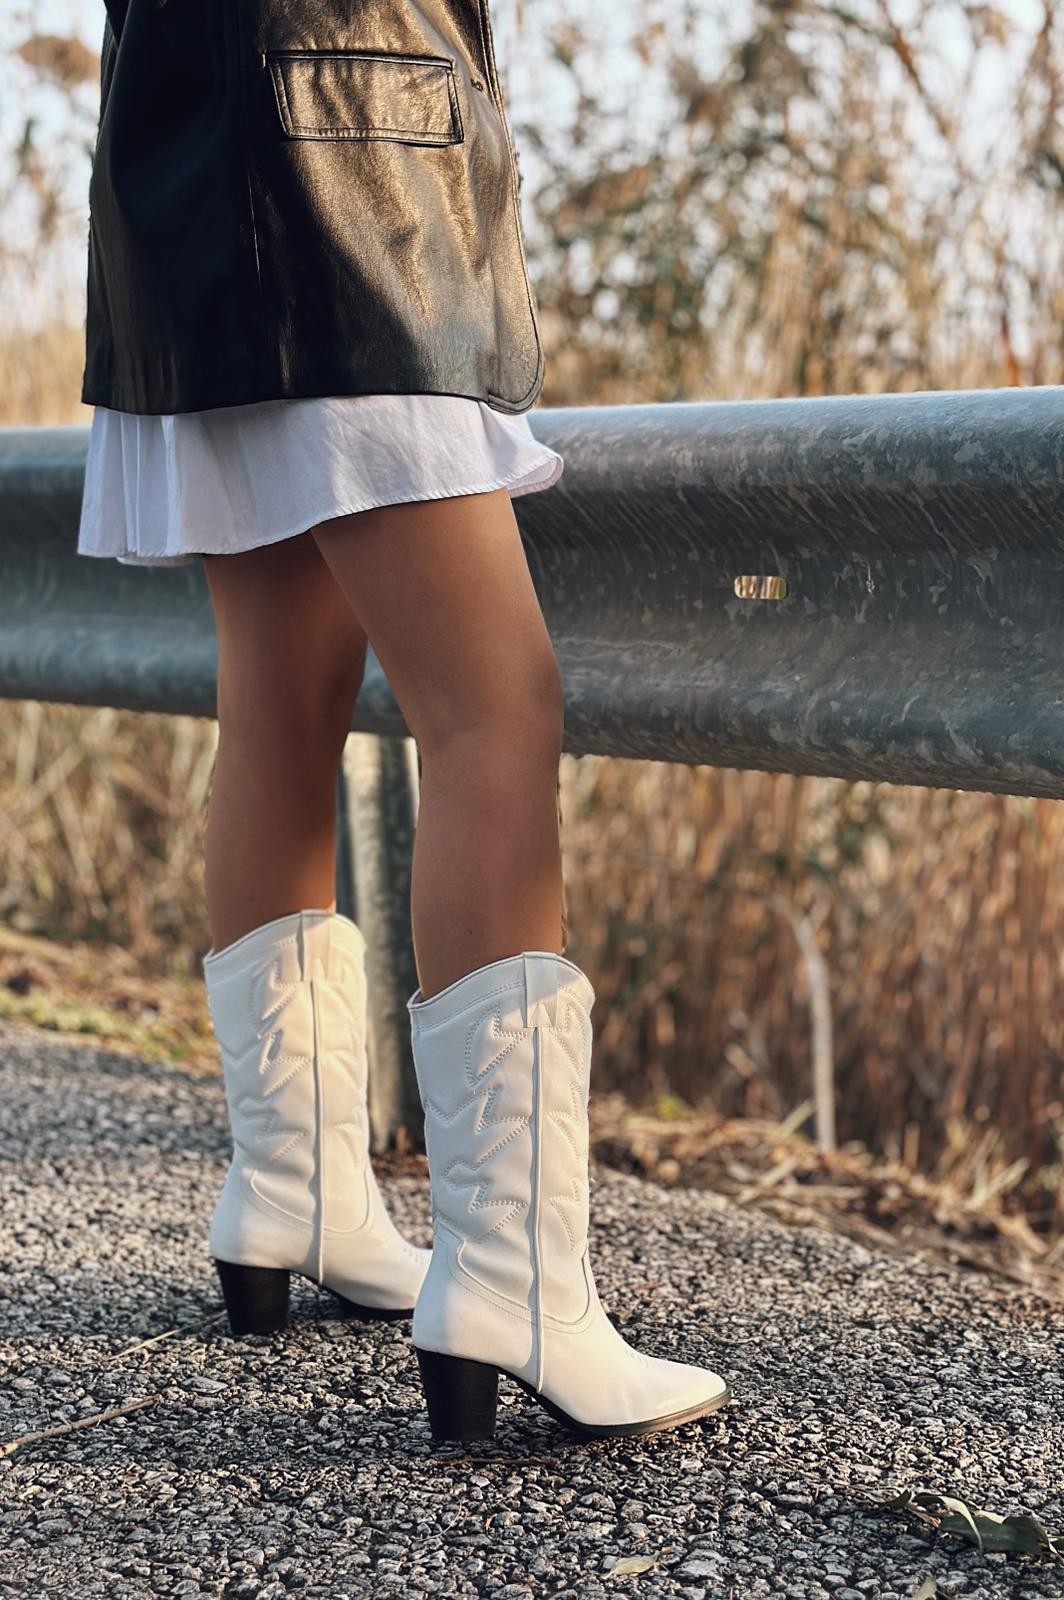 Vesnor woman matte leather cowboy boots white